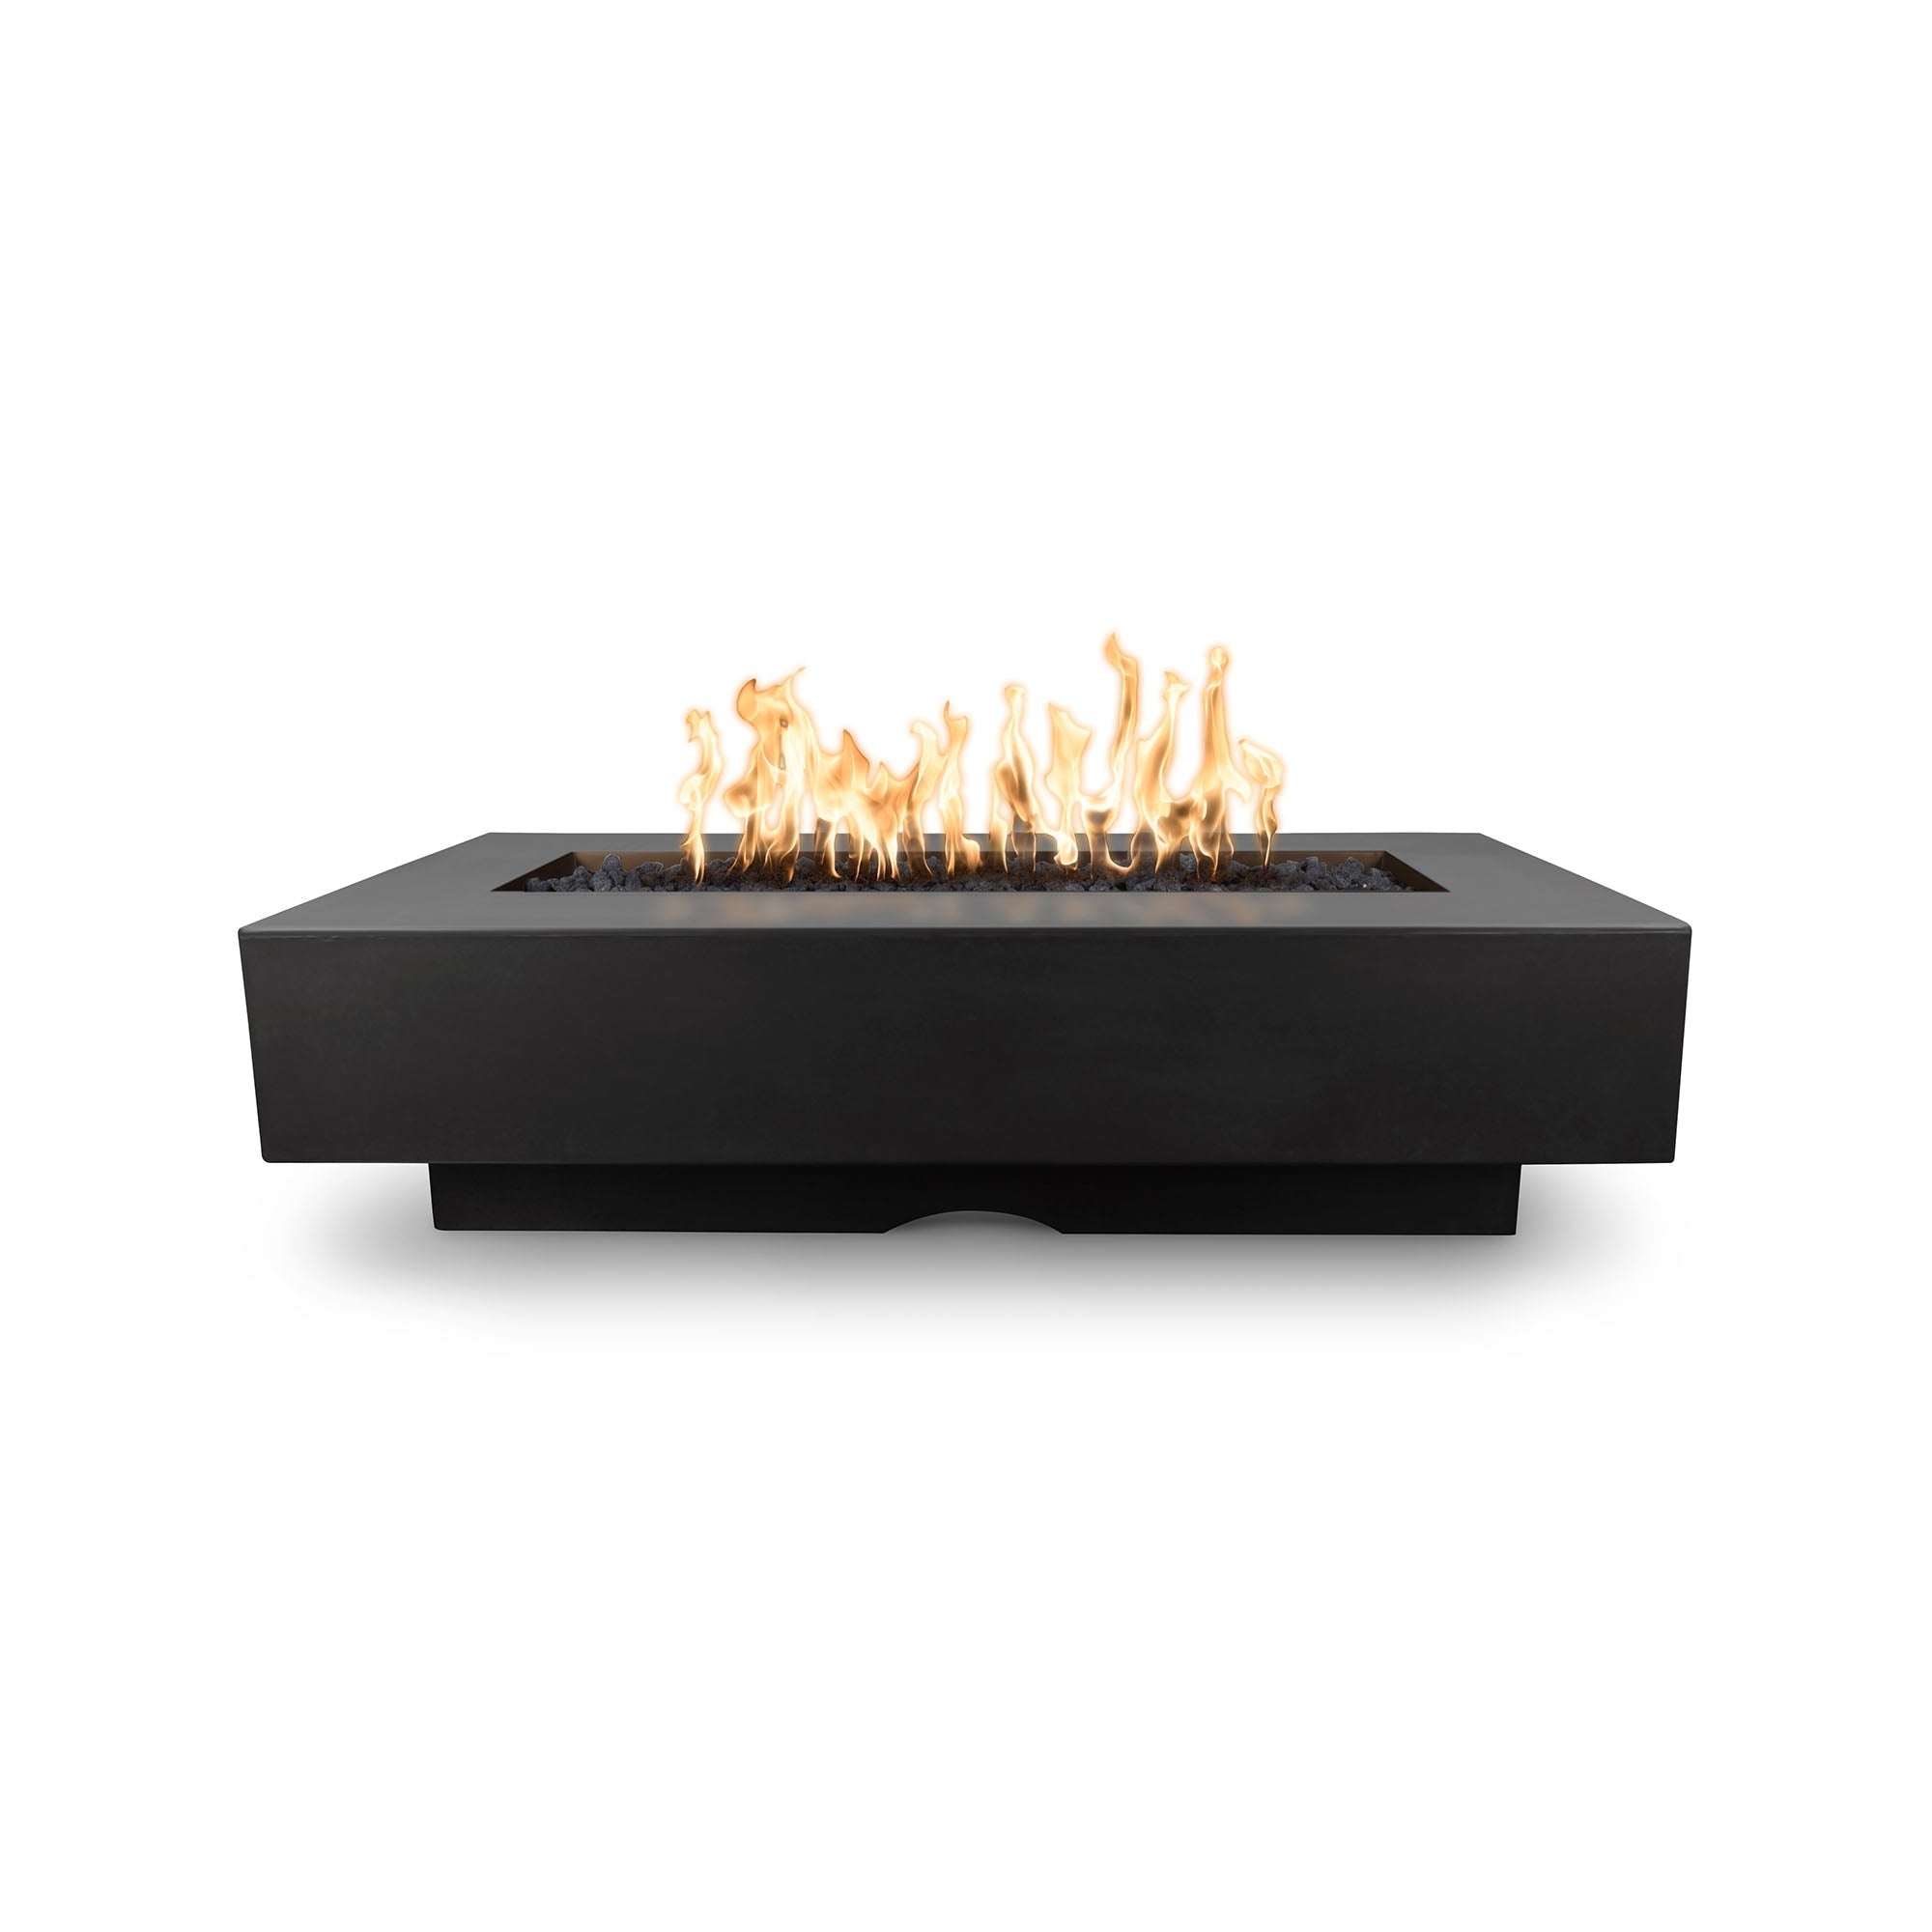 The Outdoor Plus 72" Del Mar GFRC Concrete Rectangle Fire Pit Table in Black Lit